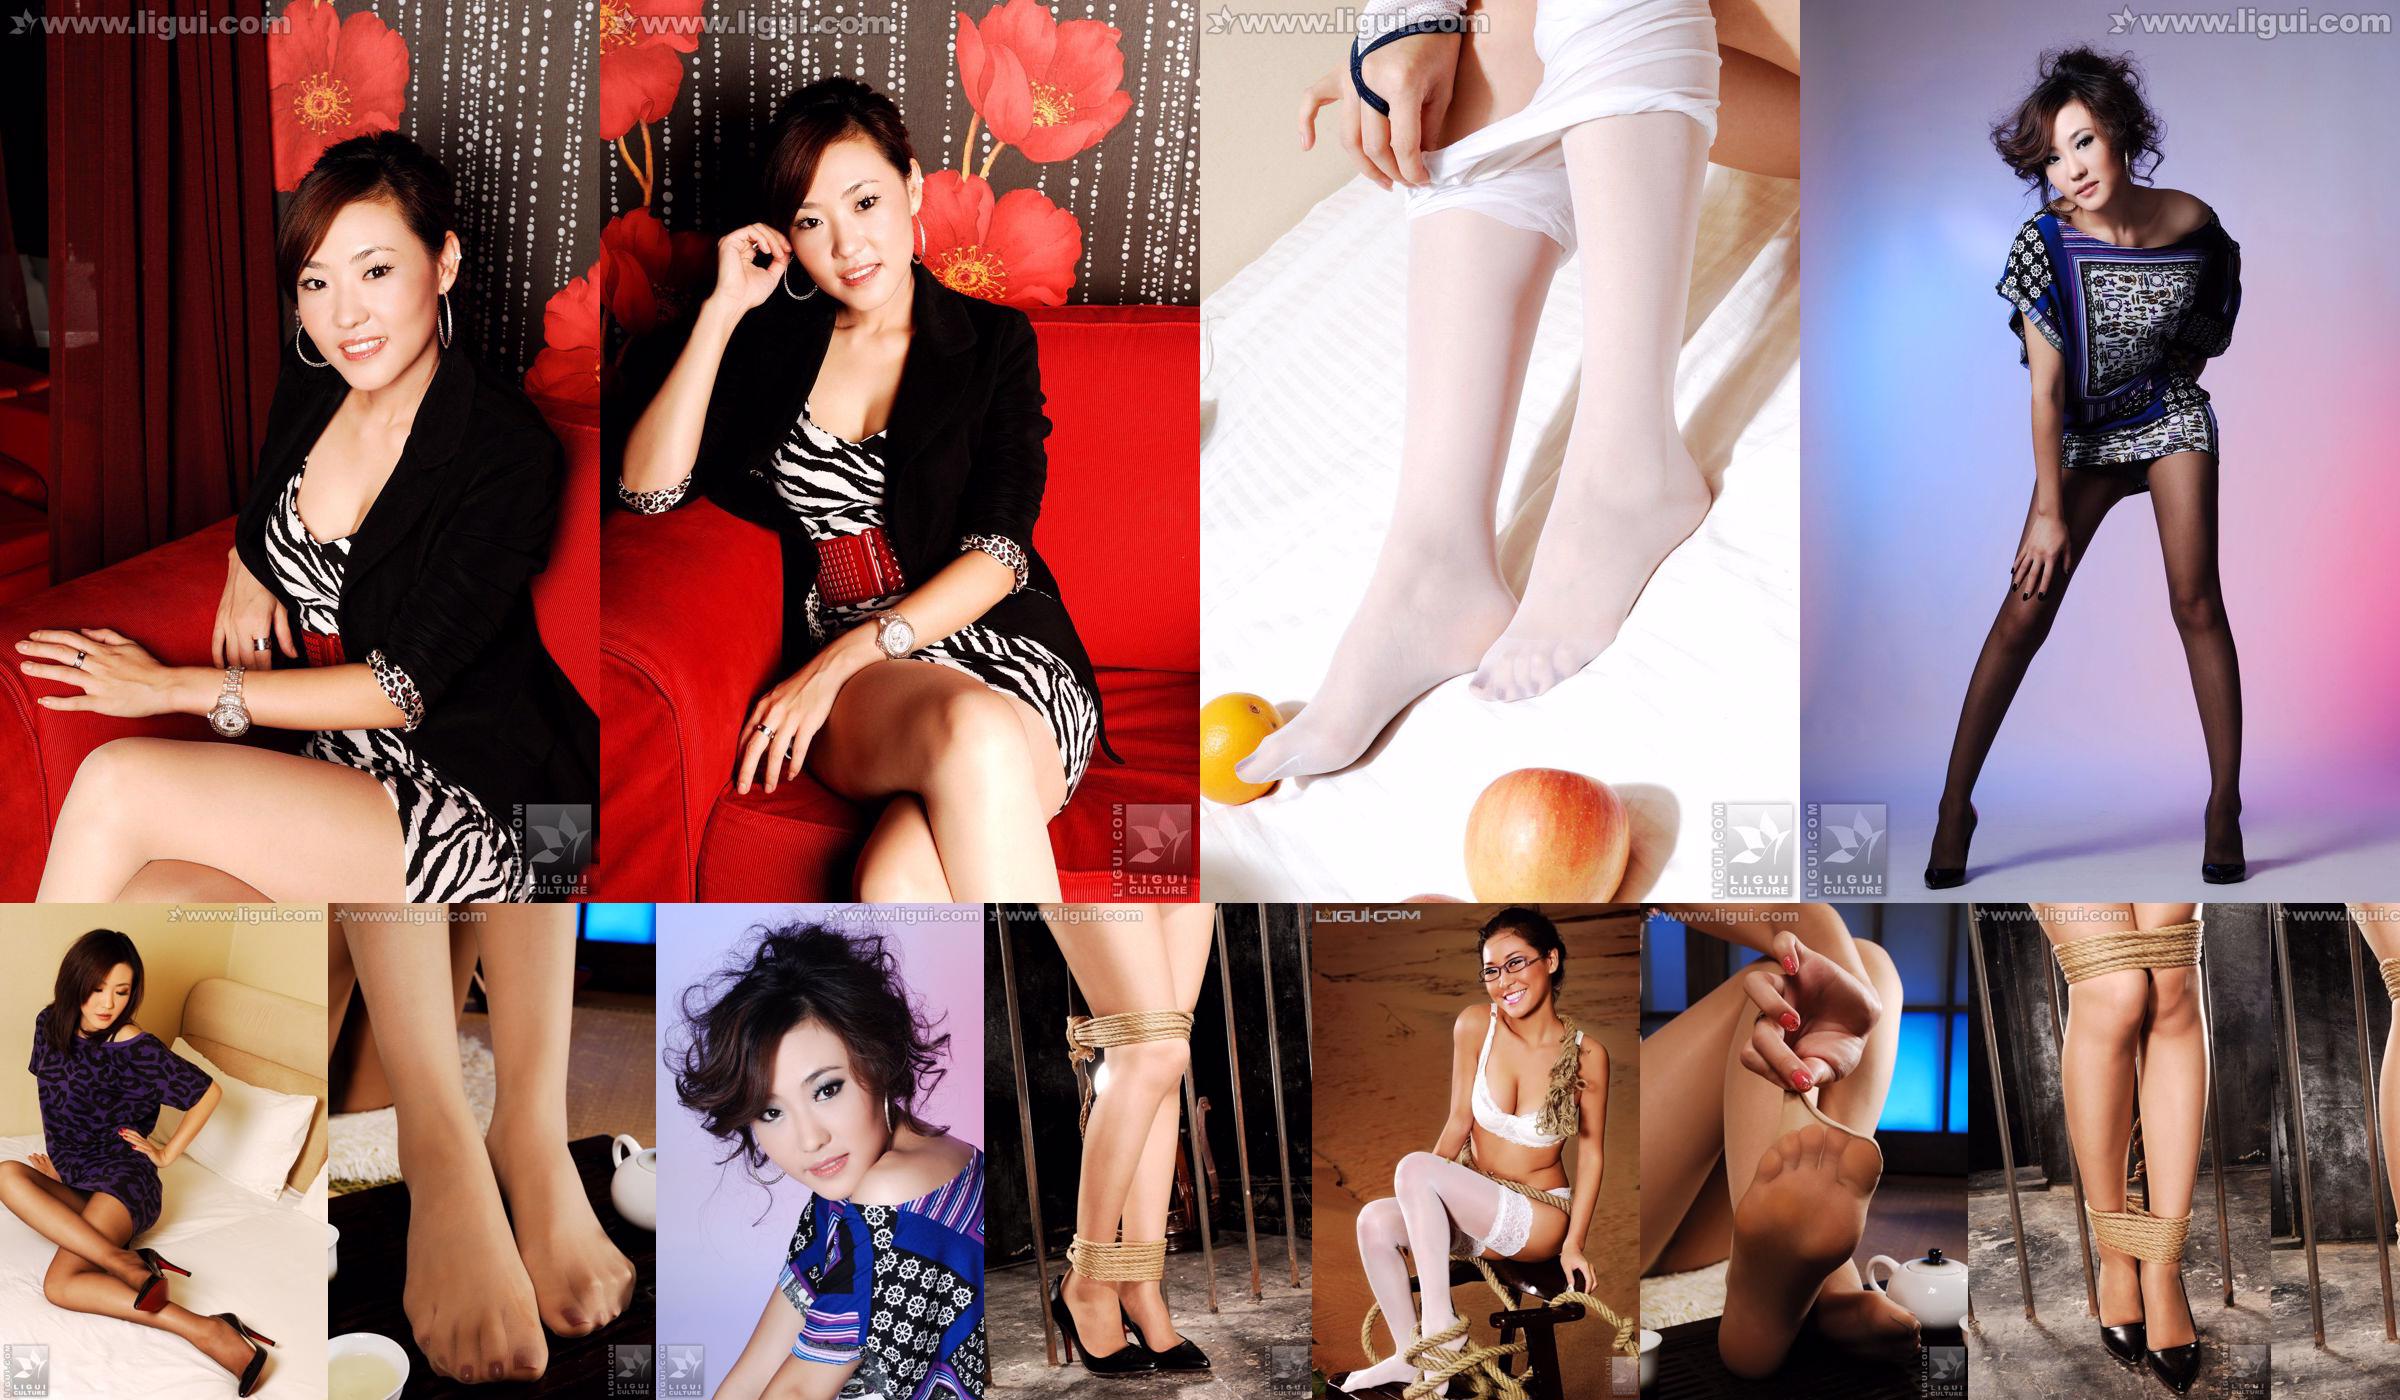 Model CoCo "Hochhackiger Charme unter professioneller Kleidung" [丽 柜 LiGui] Foto von schönen Beinen und Jadefüßen No.a44edc Seite 1